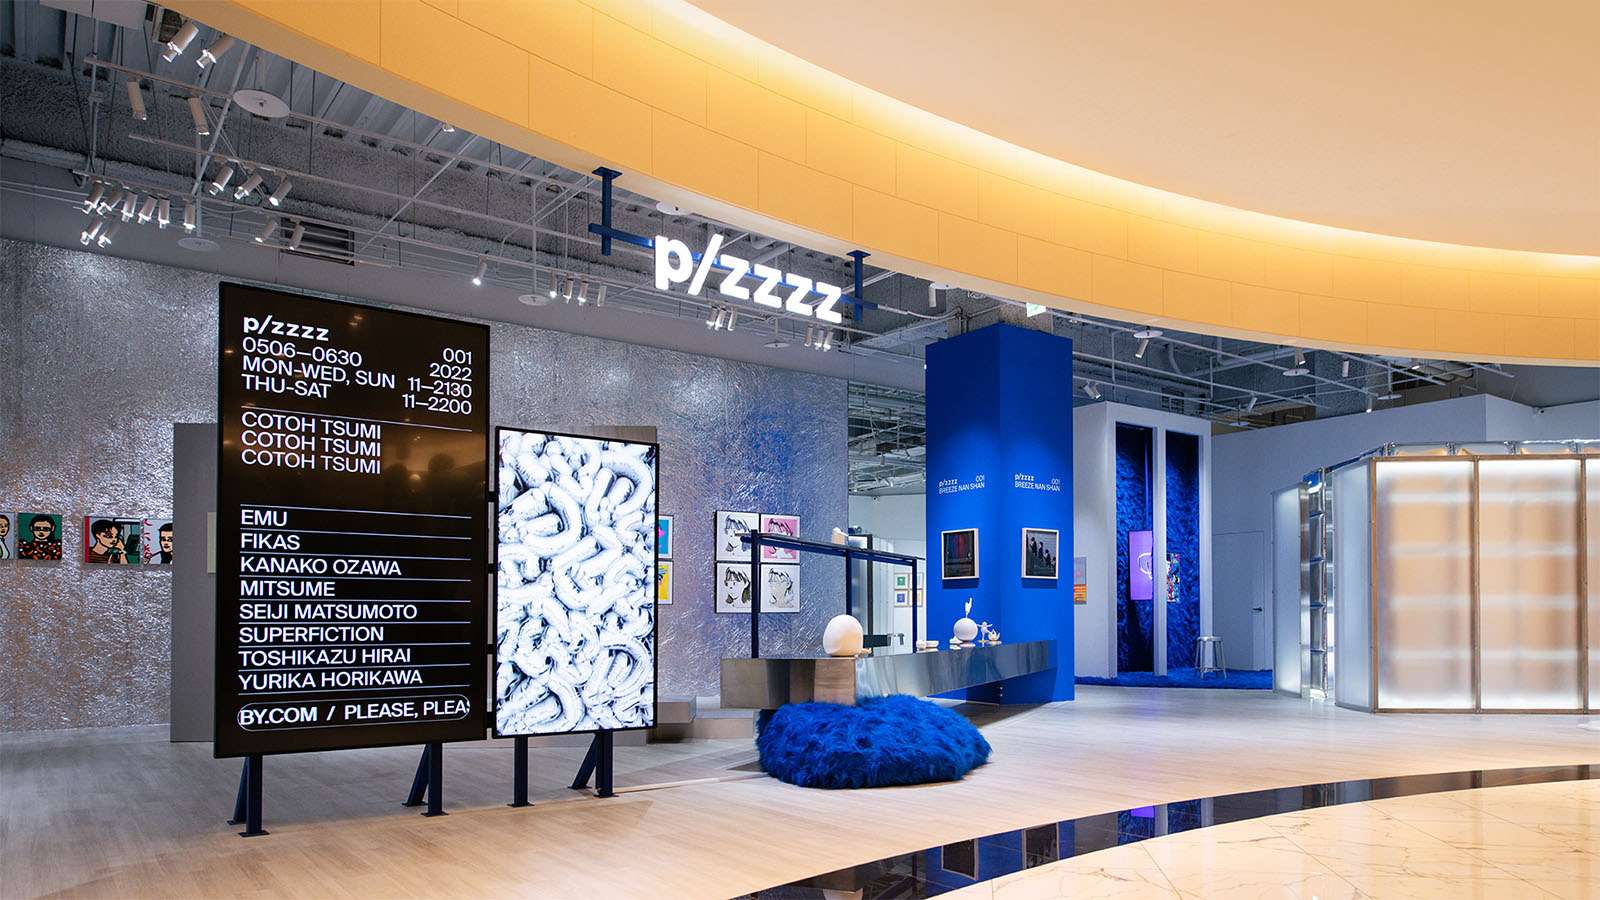 plzzzz 為國內策展公司 INCEPTION 啟藝經營的新品牌，以匯流當代與潮流藝術為主，同時經營線上與線下藝廊